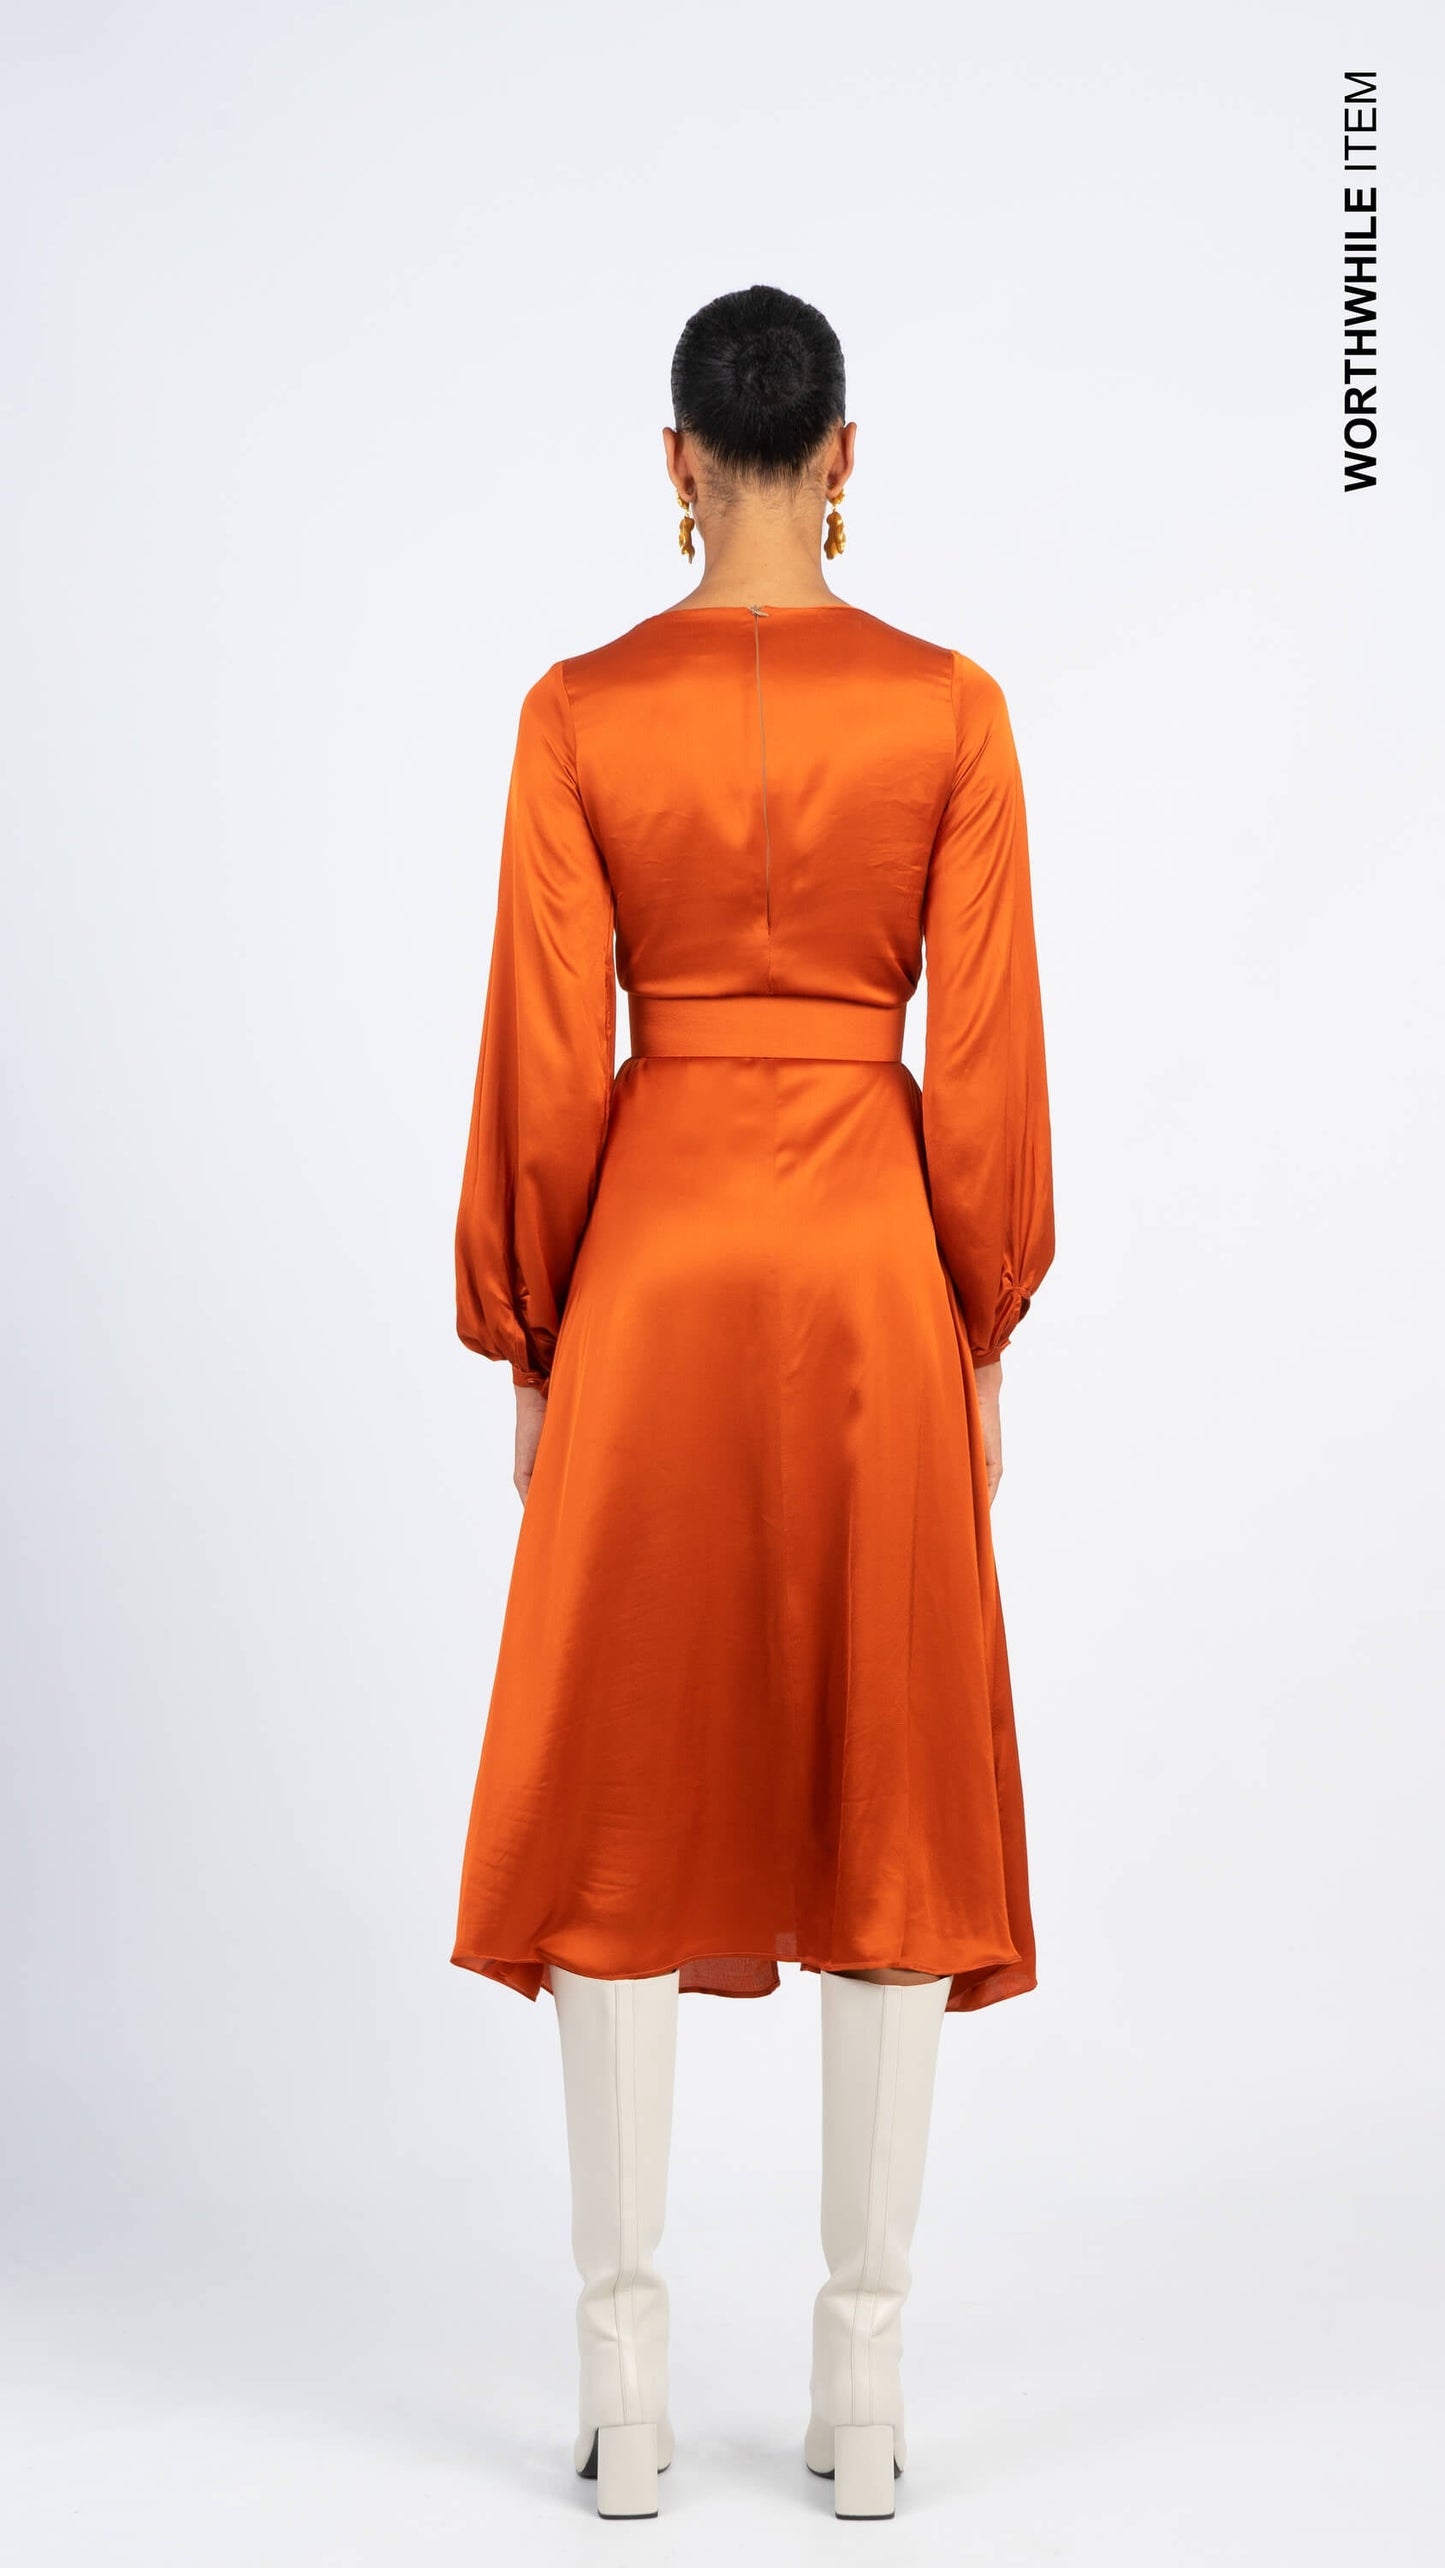 Orange satin dress